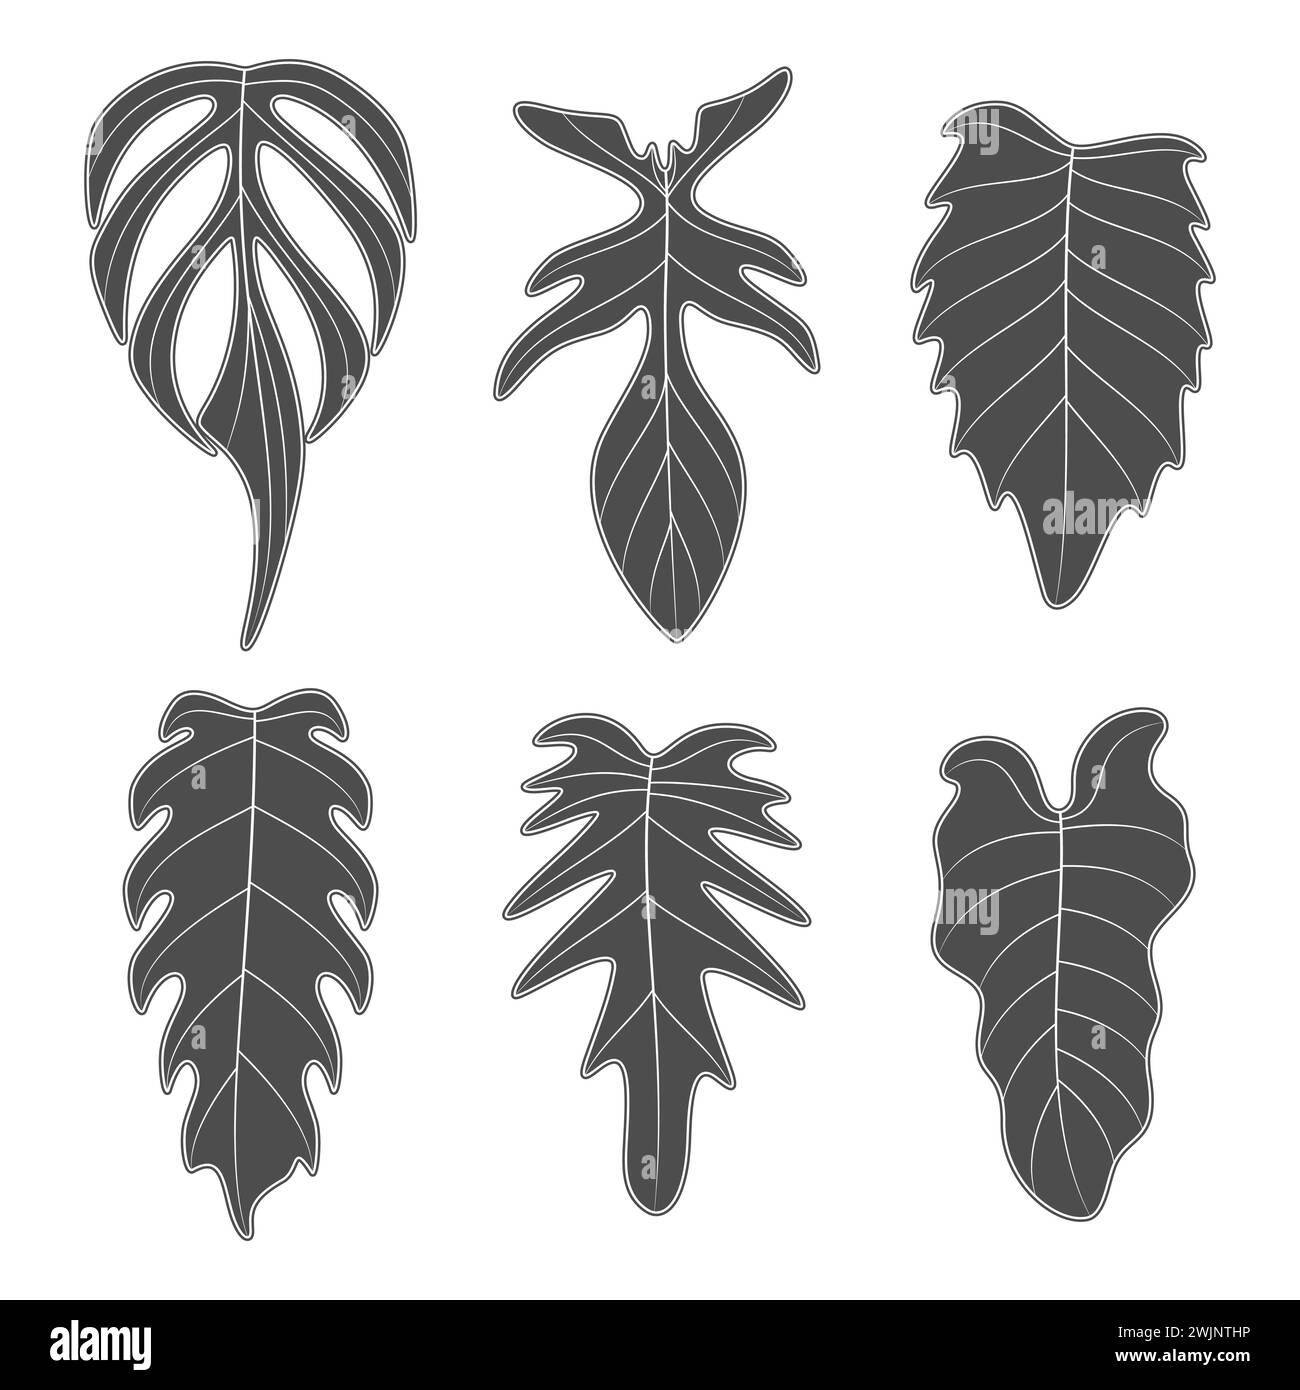 Schwarz-weiß-Illustrationen mit Monstera-Creeper-Pflanzenblättern. Isolierte Vektorobjekte auf weißem Hintergrund. Stock Vektor